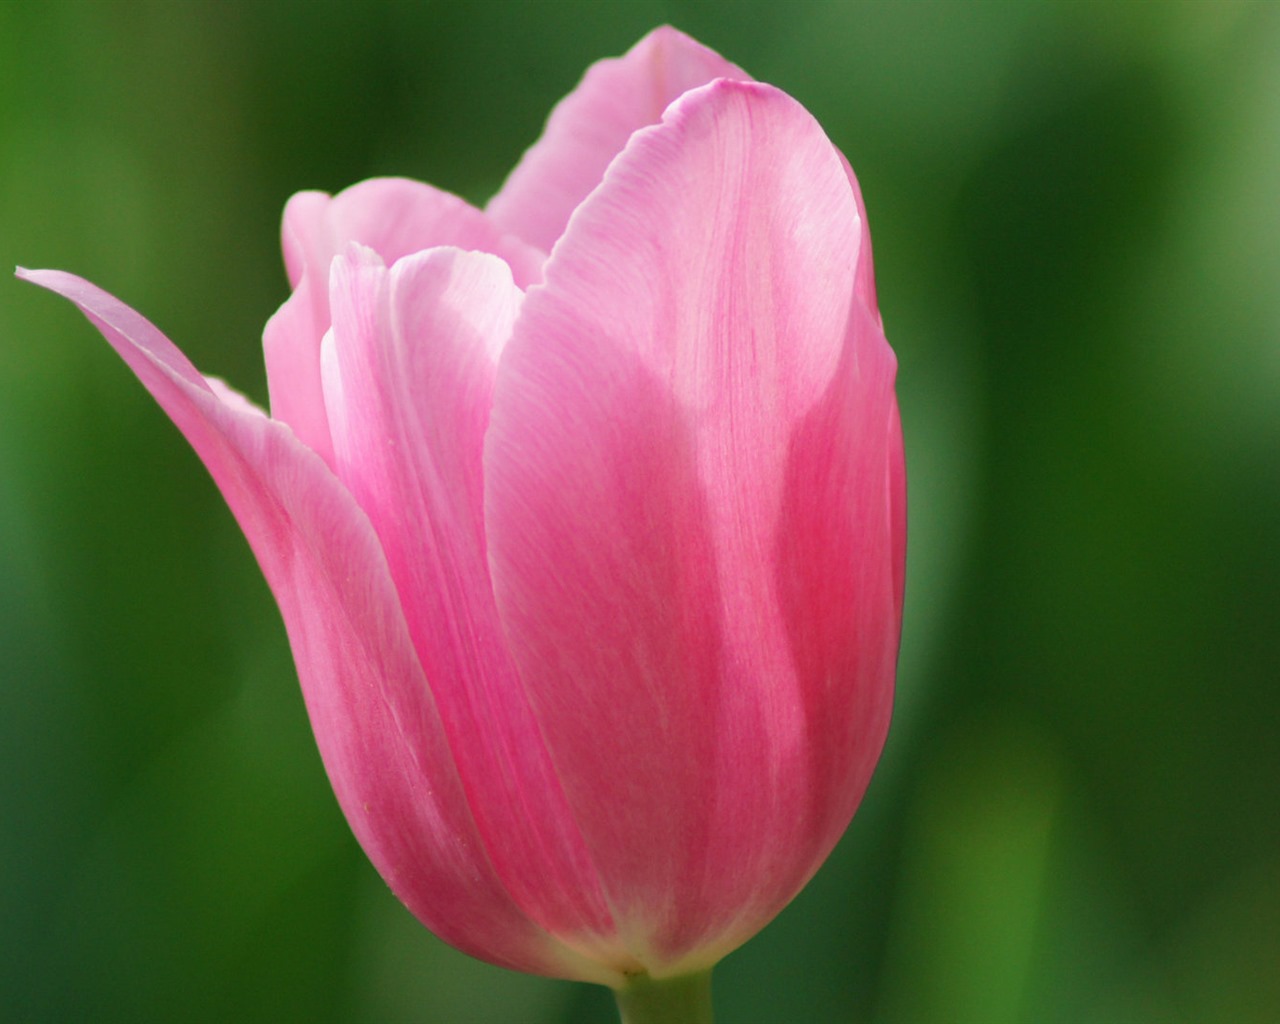 Fondos de pantalla HD de flores tulipanes frescos y coloridos #14 - 1280x1024